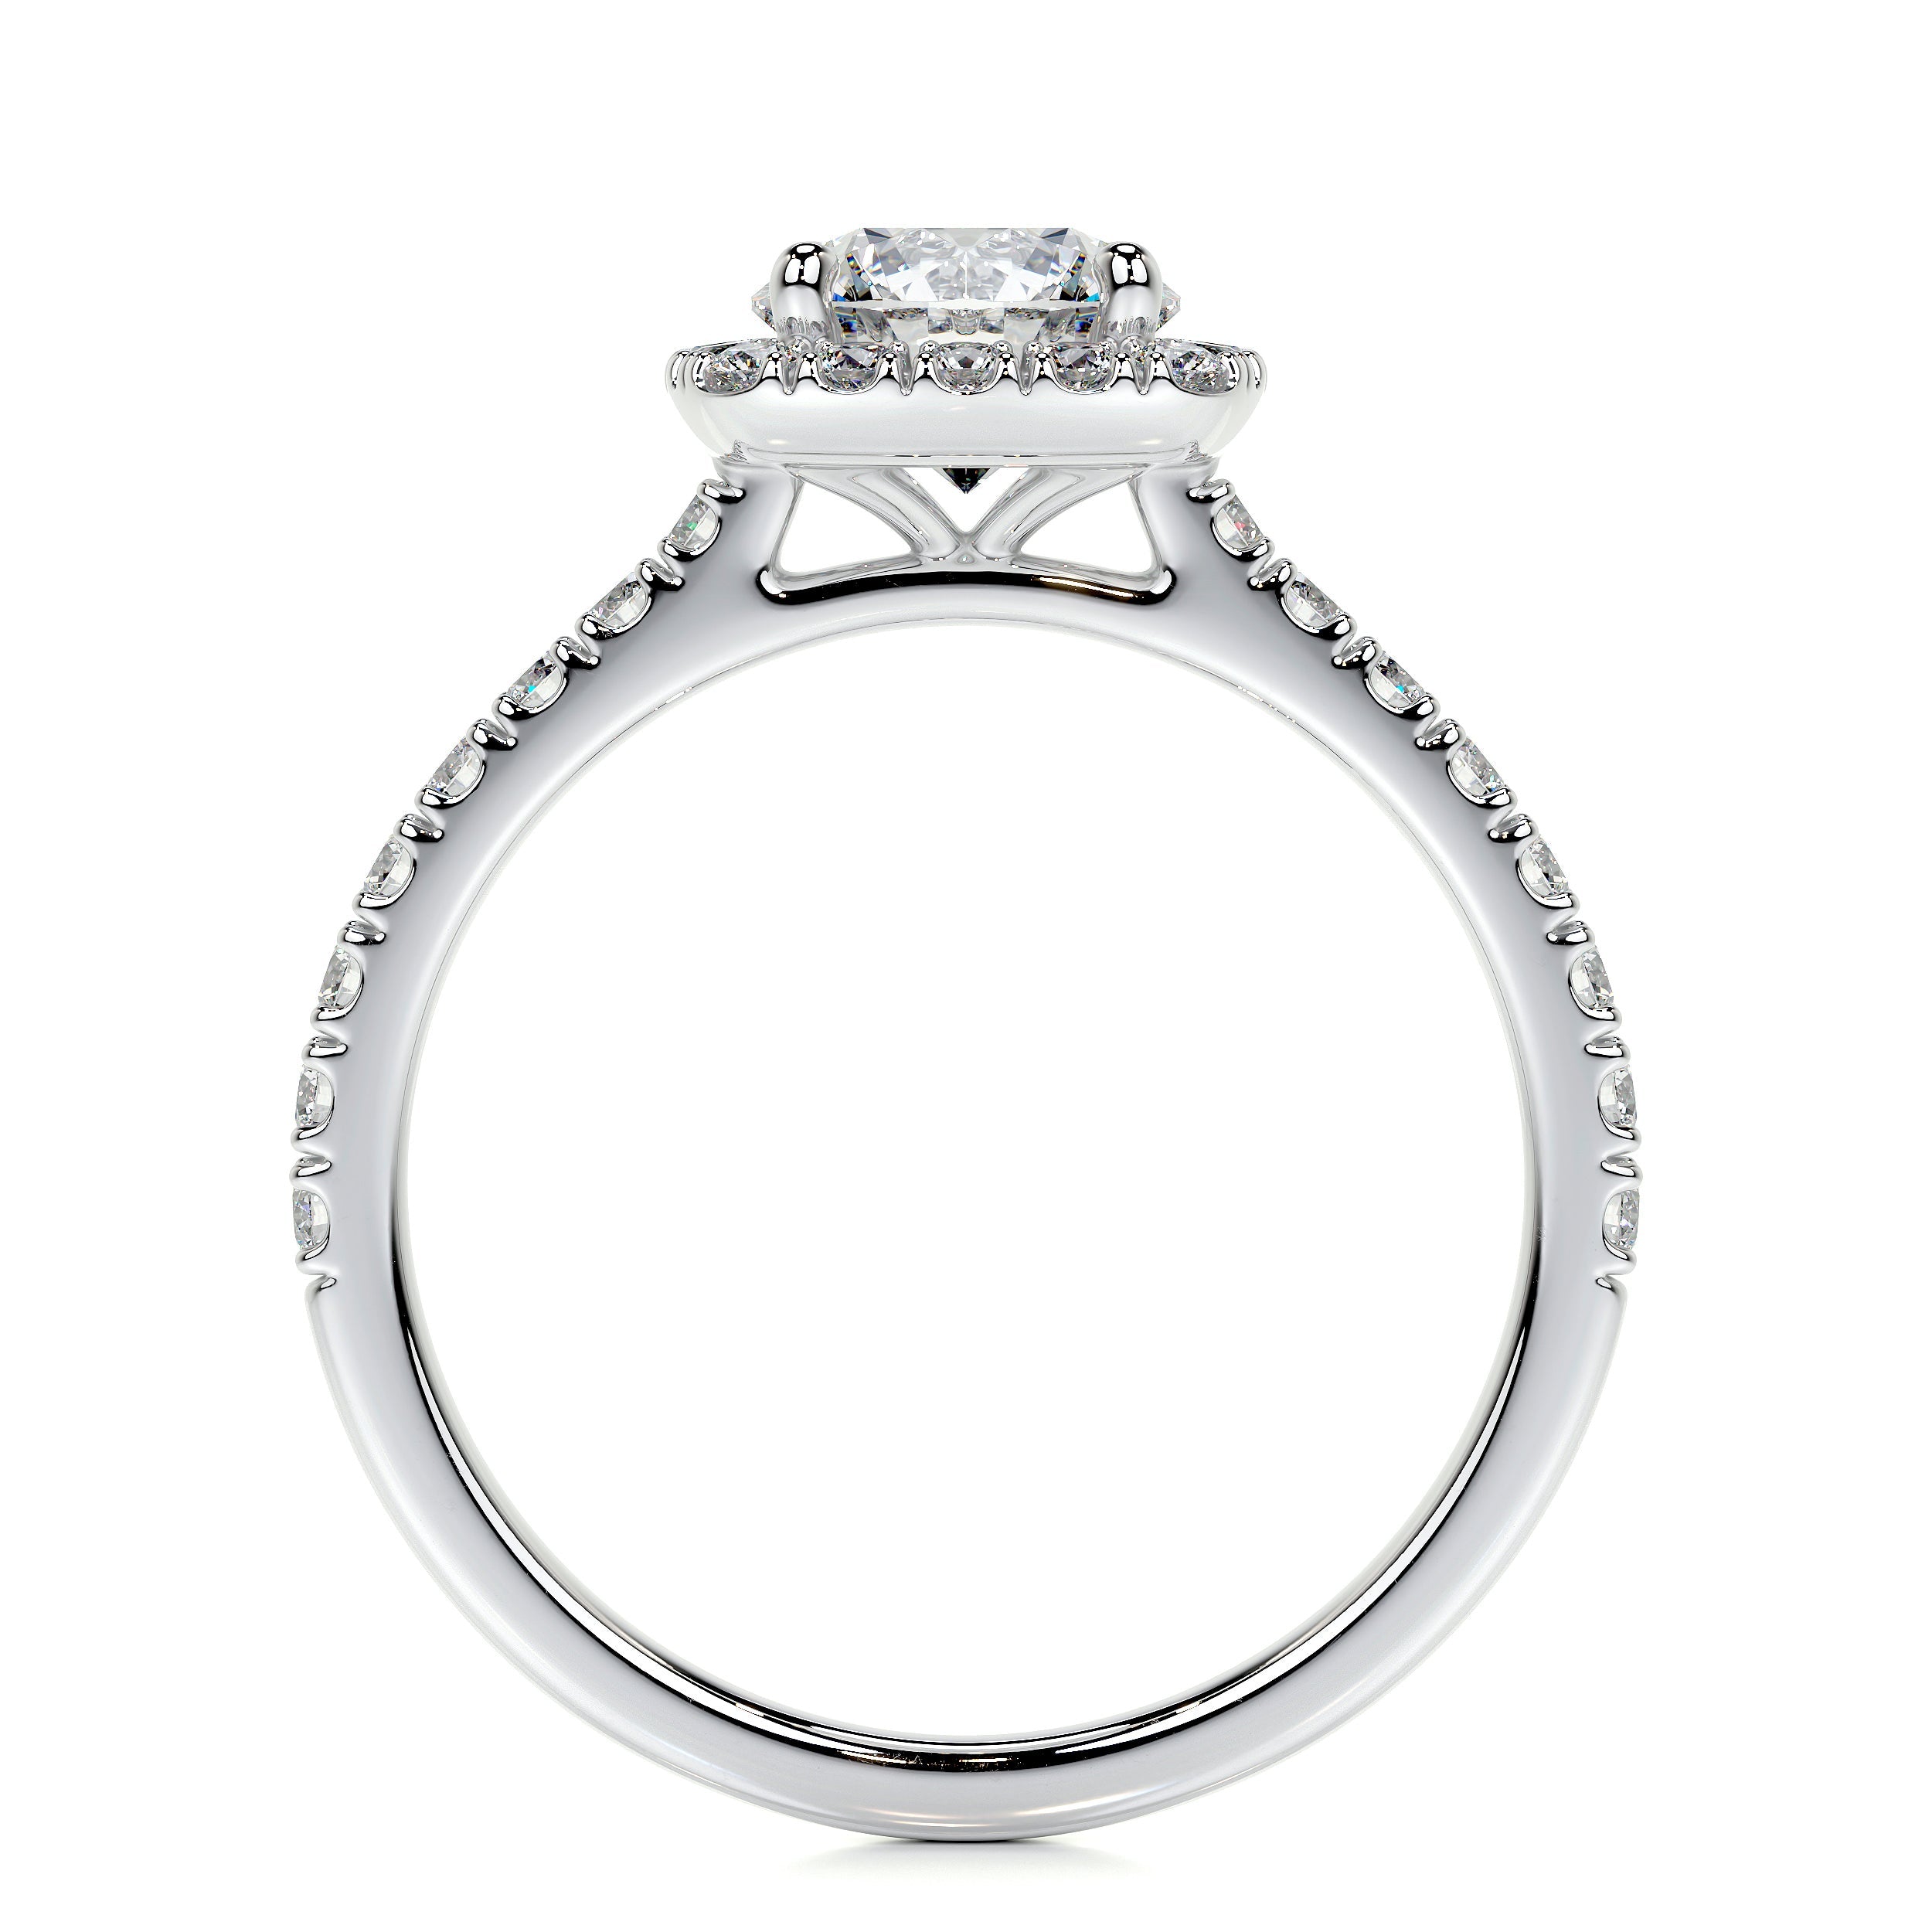 Claudia Lab Grown Diamond Ring   (1.4 Carat) -18K White Gold